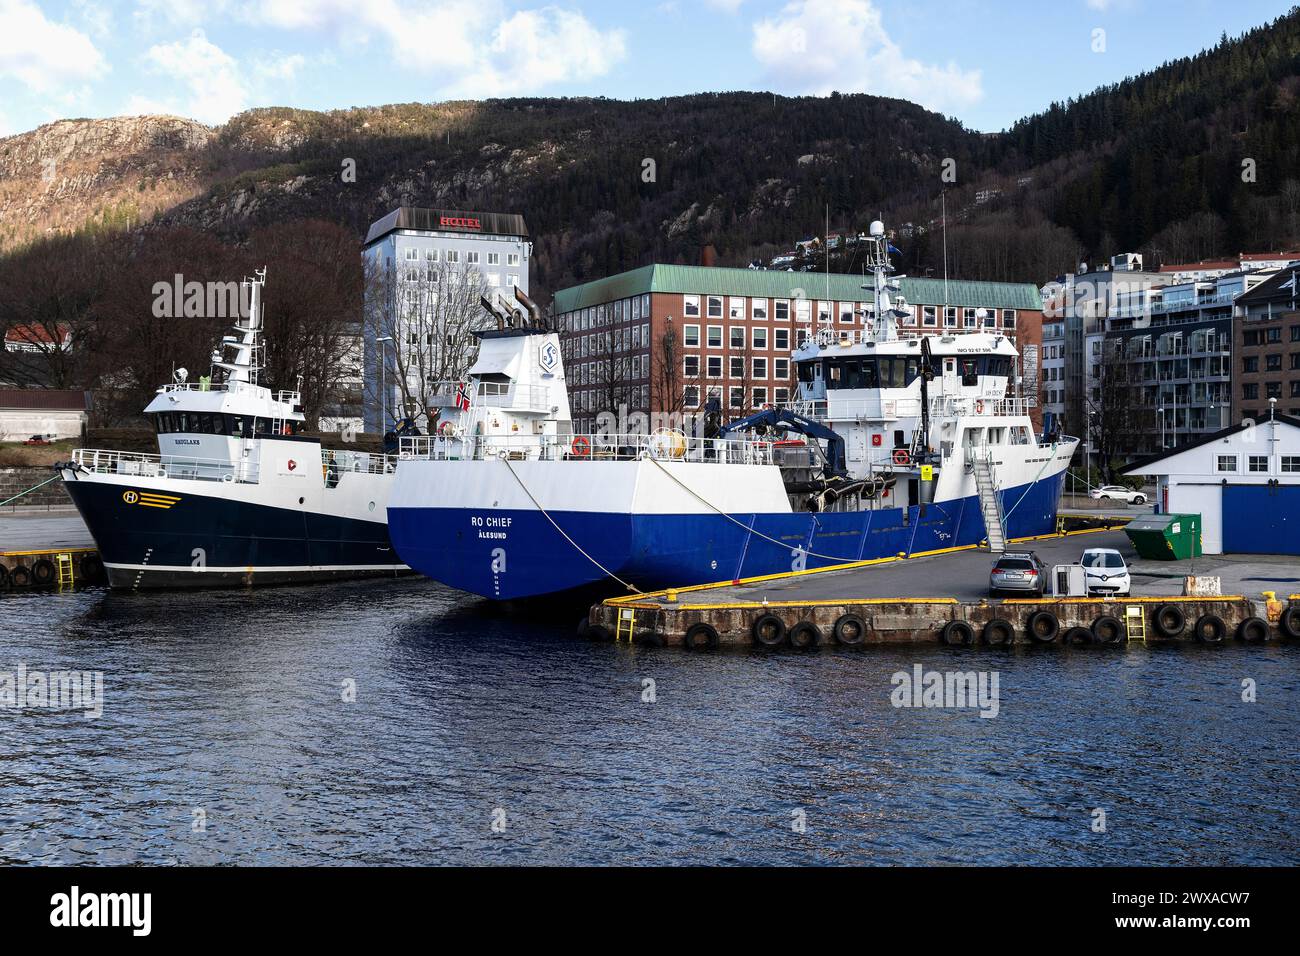 Fischtransporter/ Verarbeitungsschiff Hauglaks und Fischtransporter RO Chief im Hafen von Bergen, Norwegen. Stockfoto